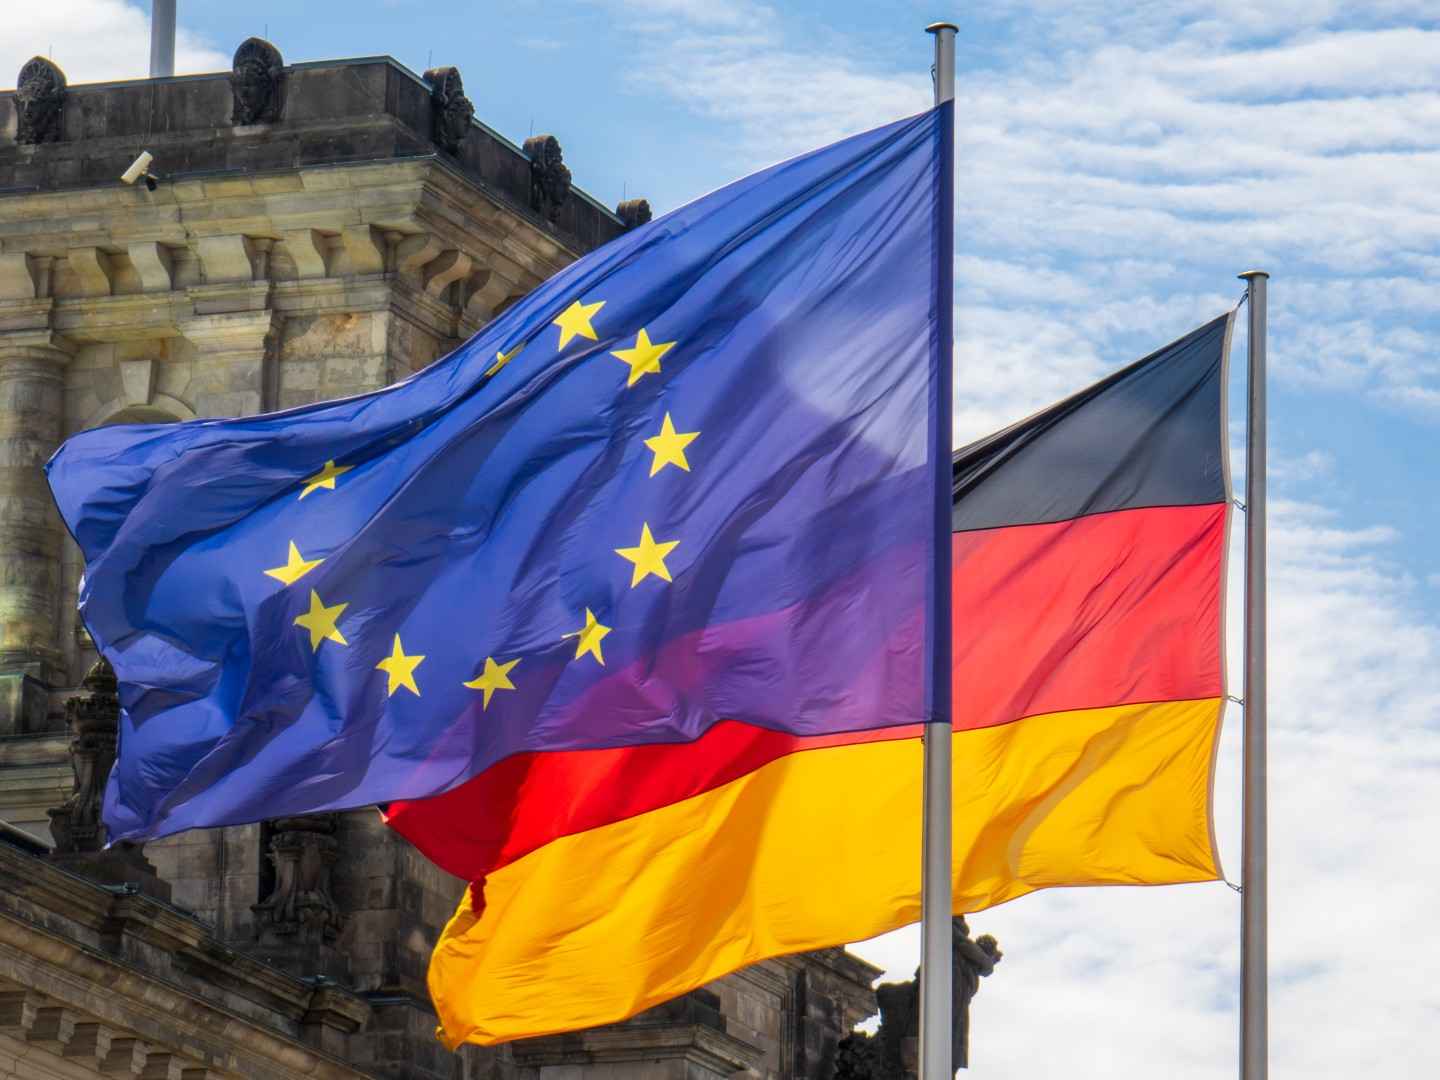 Europa- und Deutschlandflagge nebeneinander.